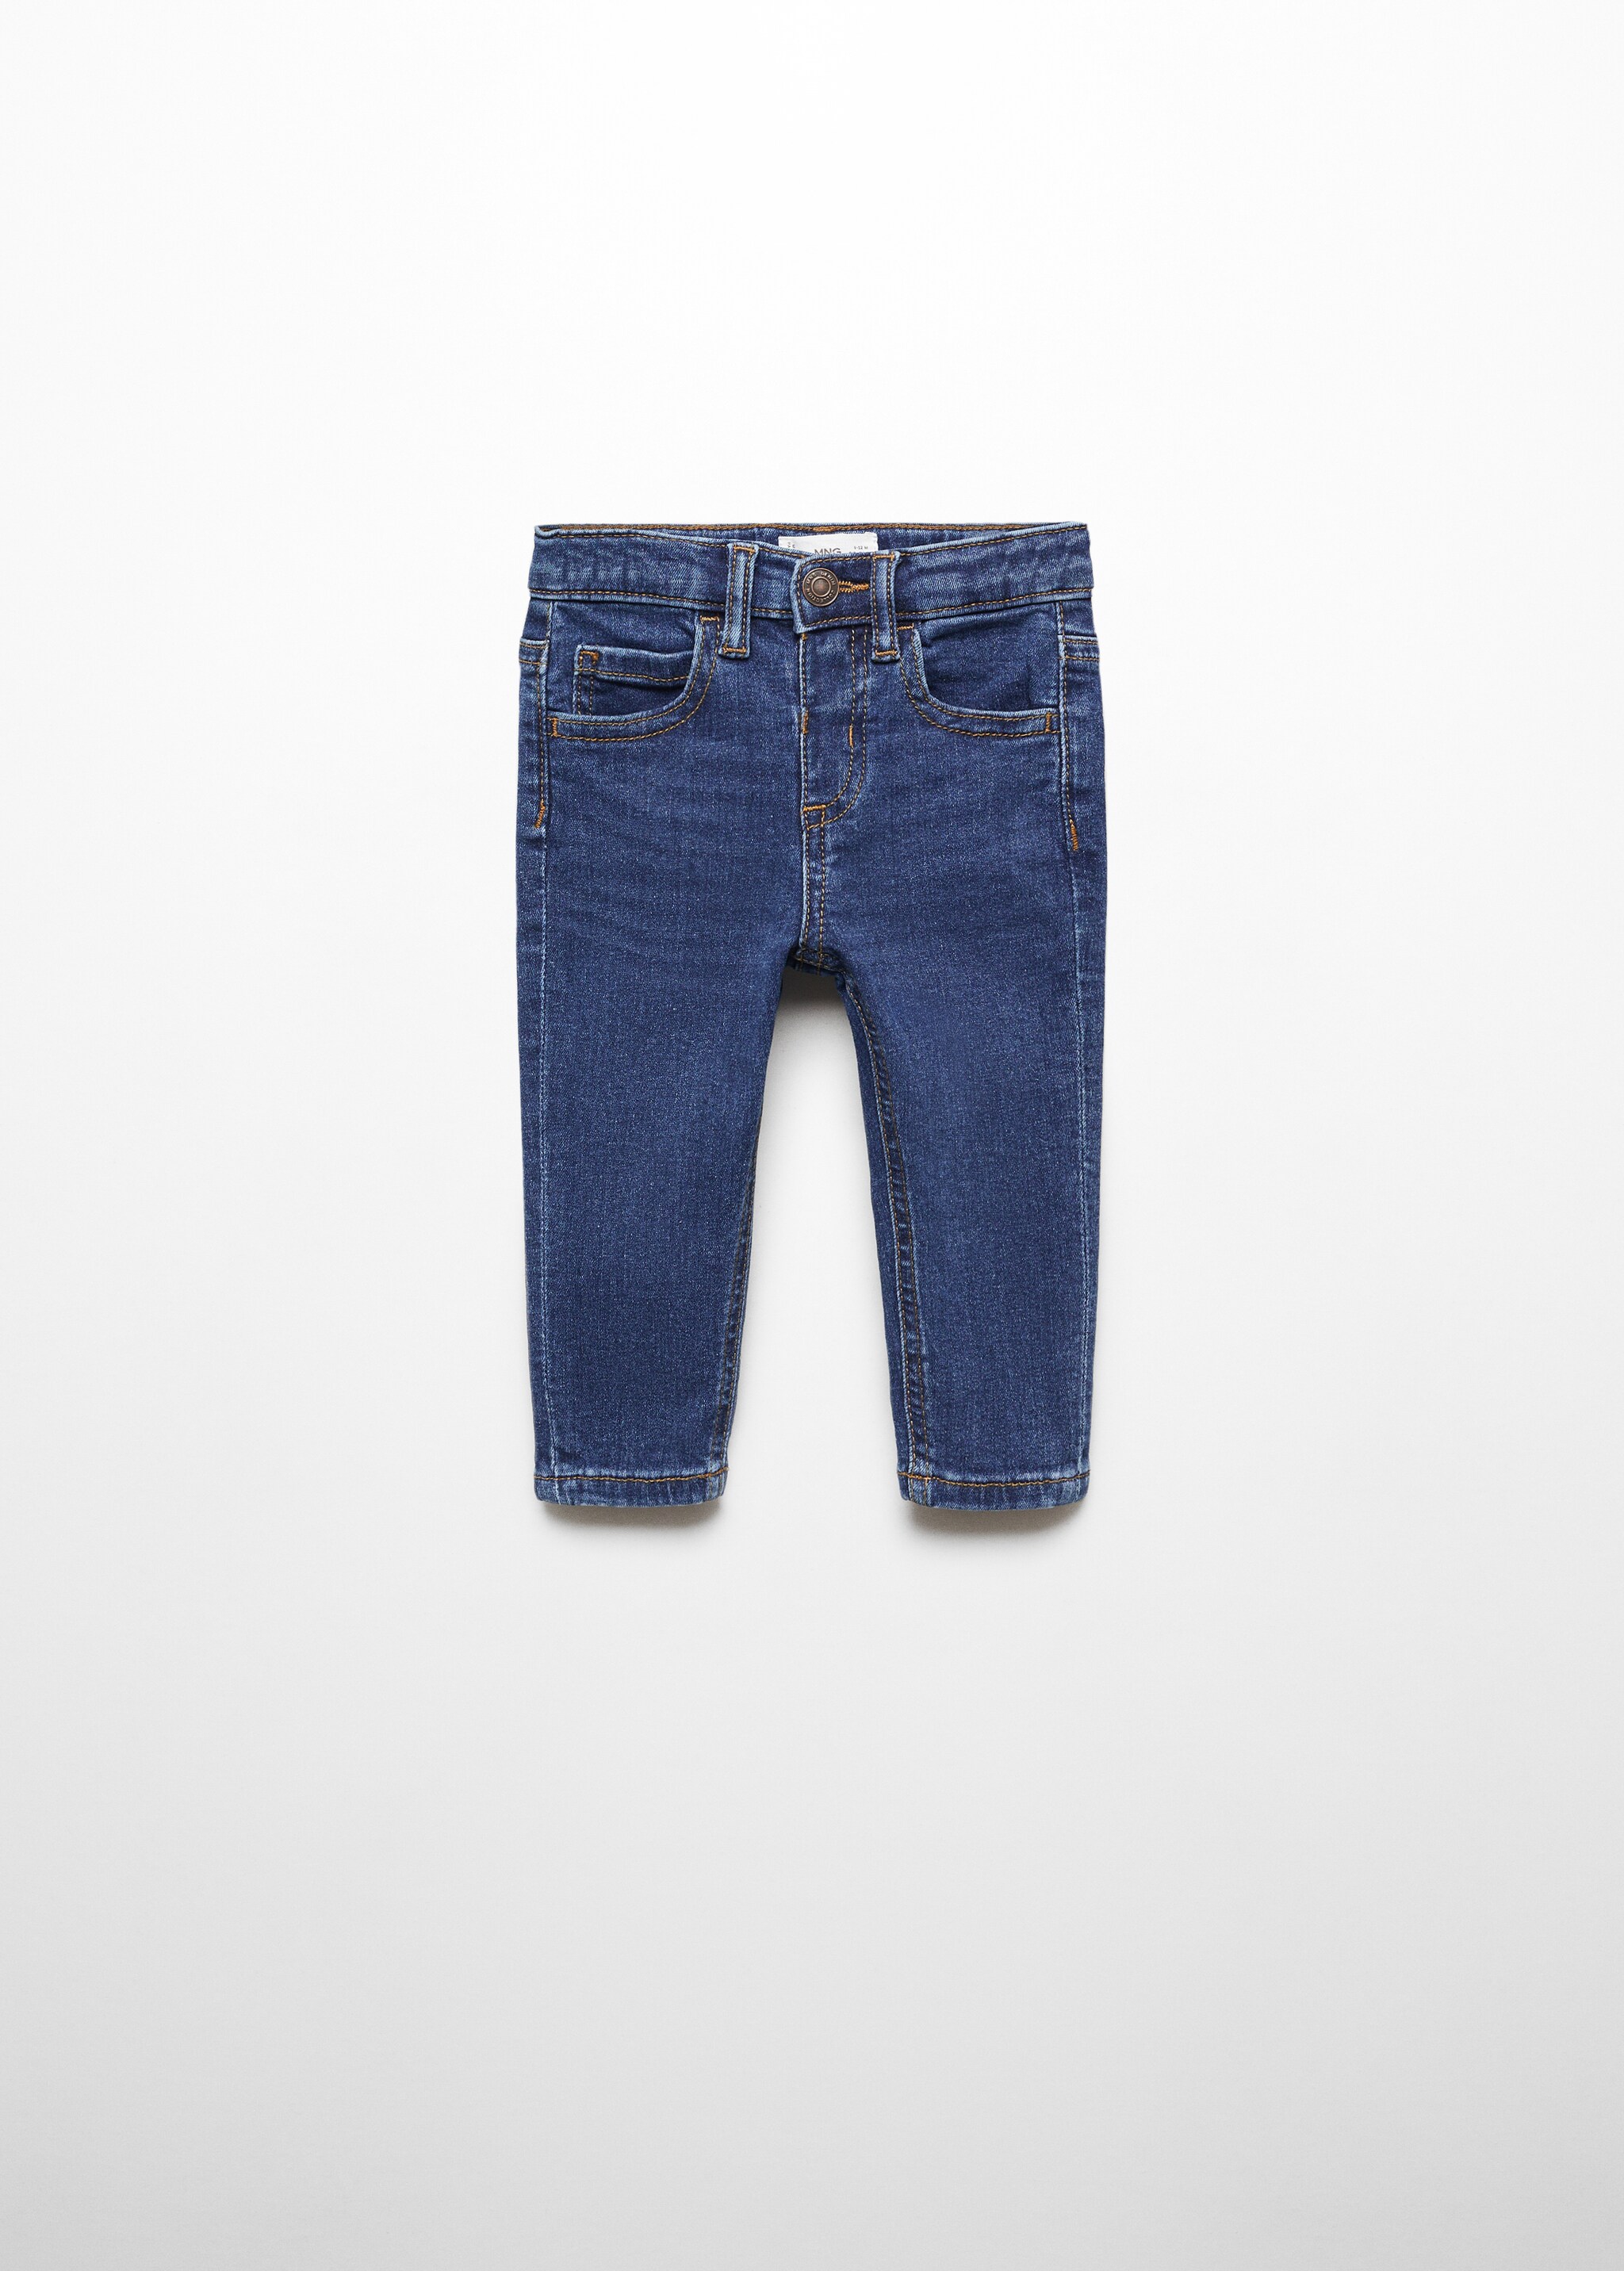 Jeans skinny de algodão - Artigo sem modelo